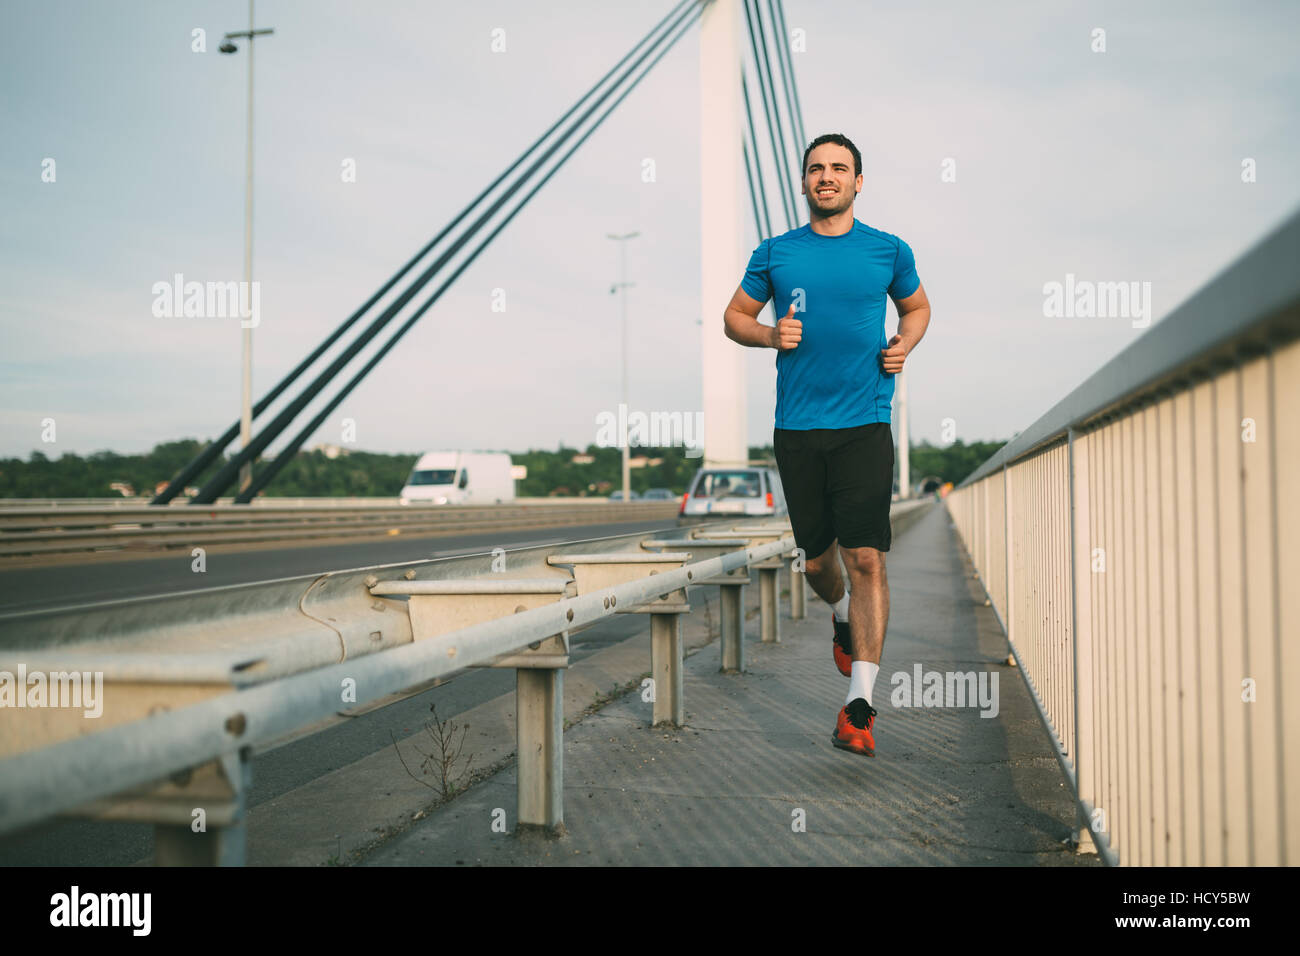 Passen Sie Athleten laufen im Freien, um gesund zu bleiben Stockfoto